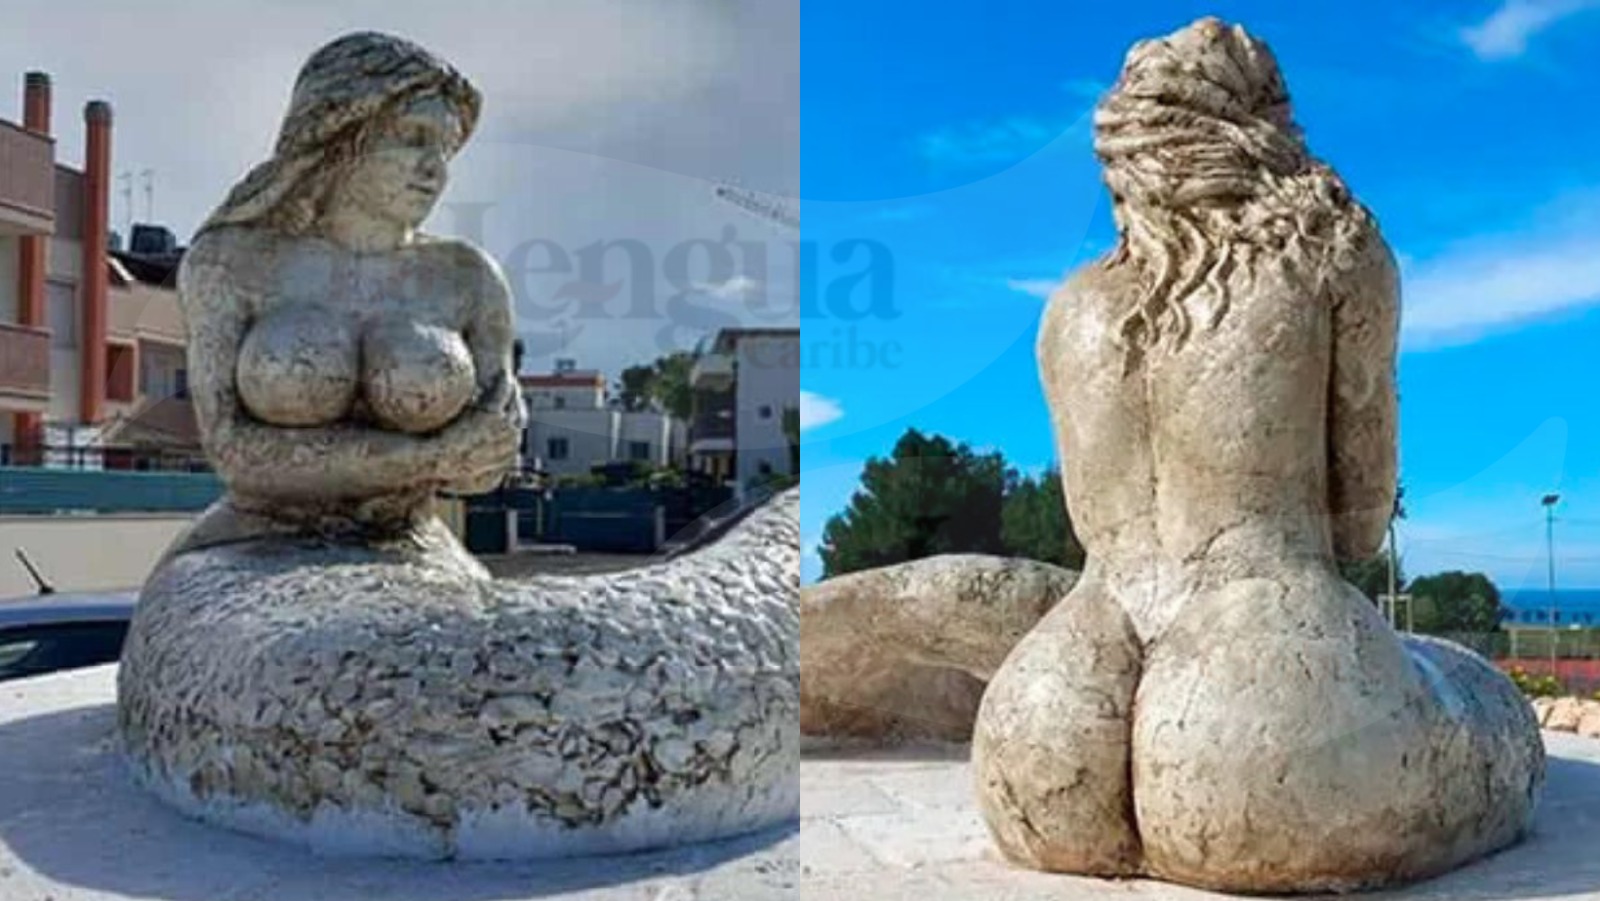 Estatua de sirena demasiado “voluptuosa y provocativa” causa revuelo en pueblo italiano